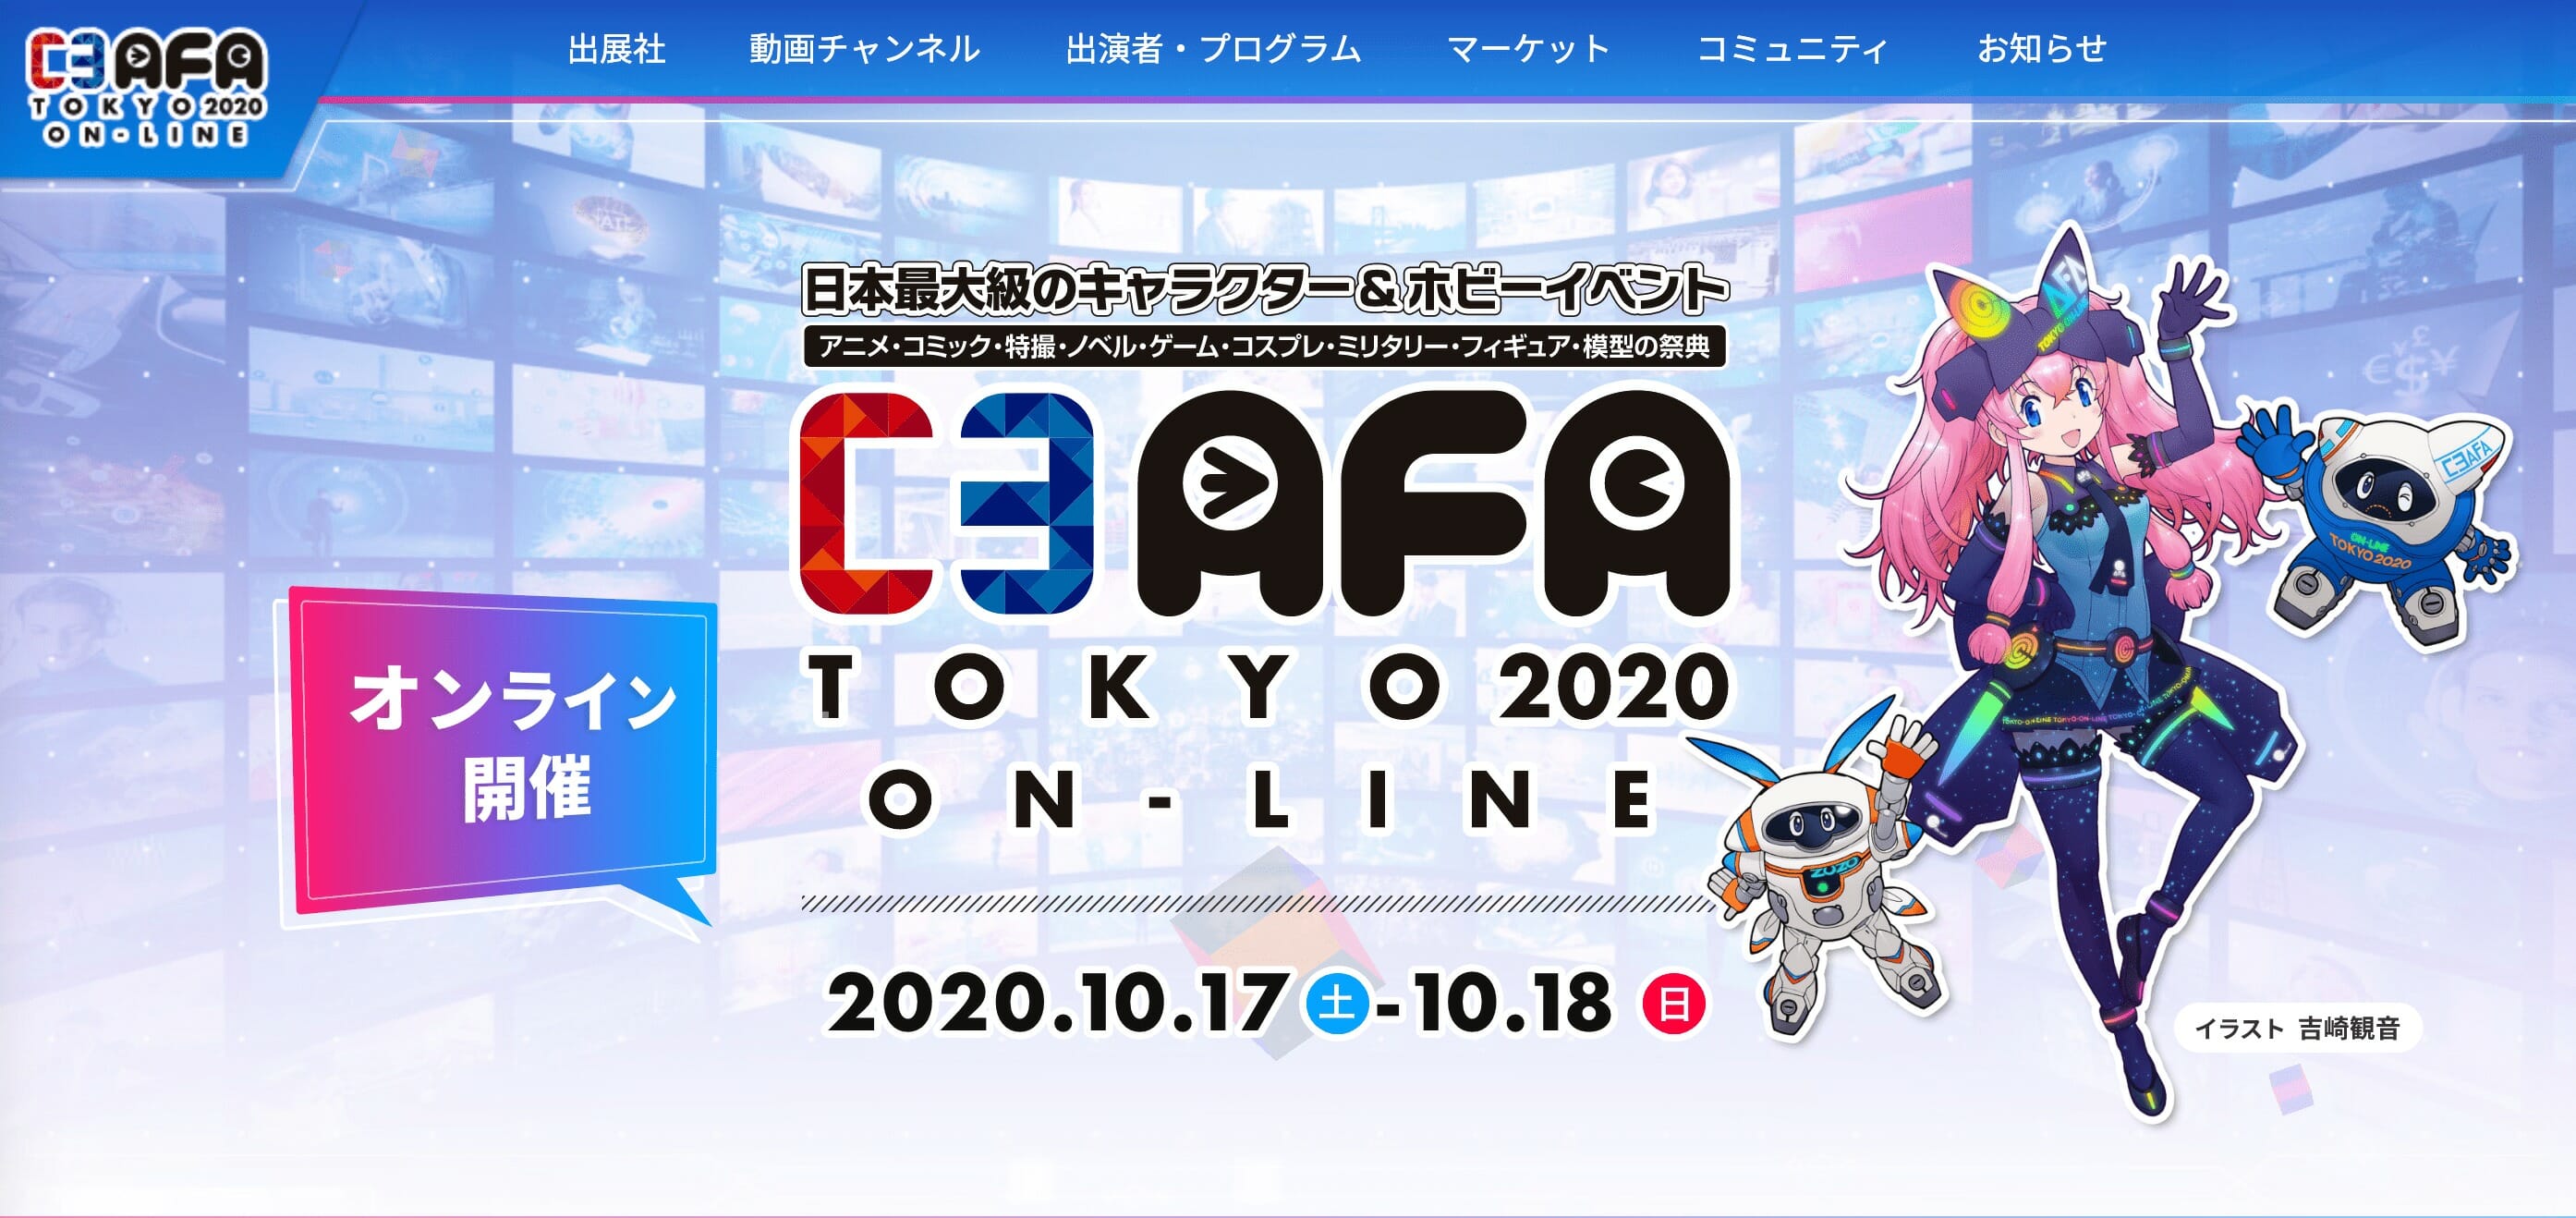 日本最大級のキャラクターとホビーの祭典 C3afa Tokyo が10月17日からオンラインで開催 Sqoolnetゲーム研究室